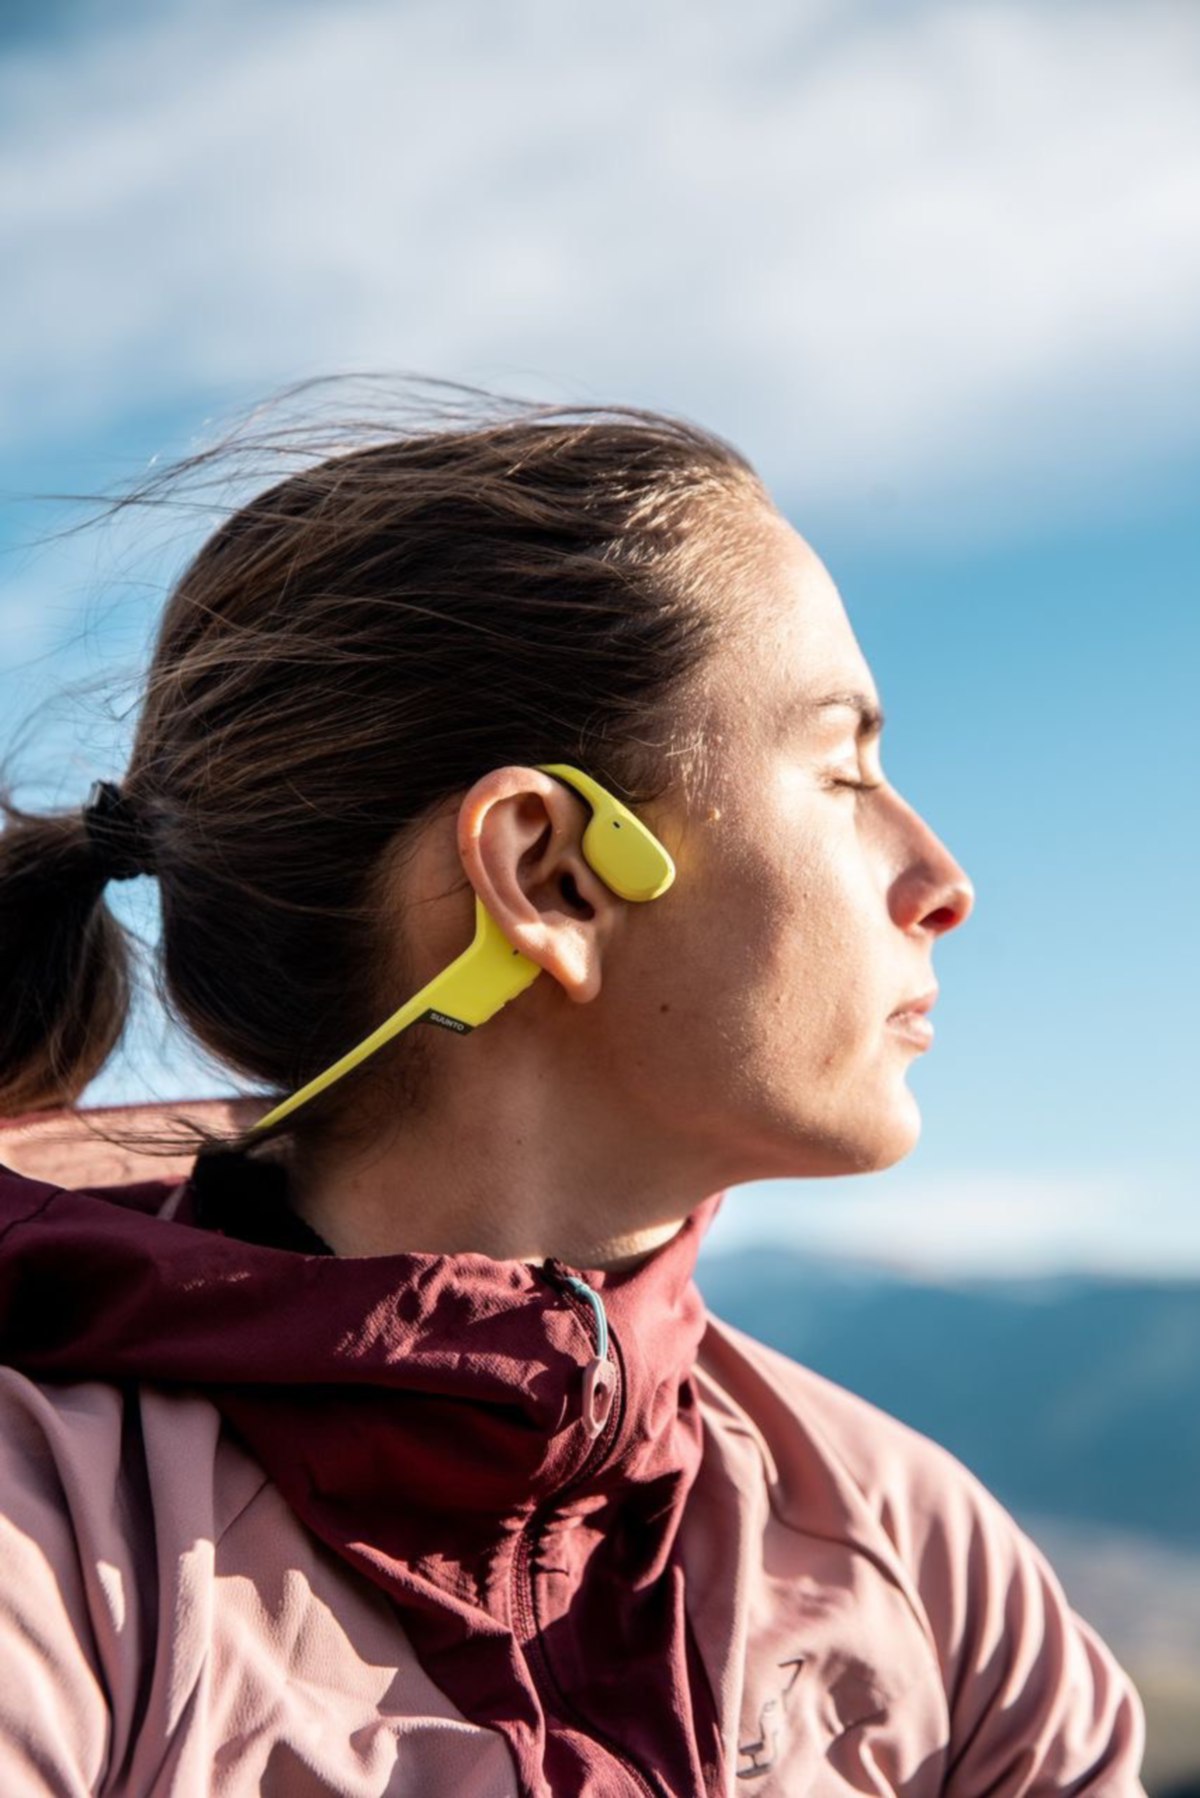 PERANTI boleh pakai fon kepala memberikan kebebasan kepada pengguna untuk mendengar muzik atau sebagainya.